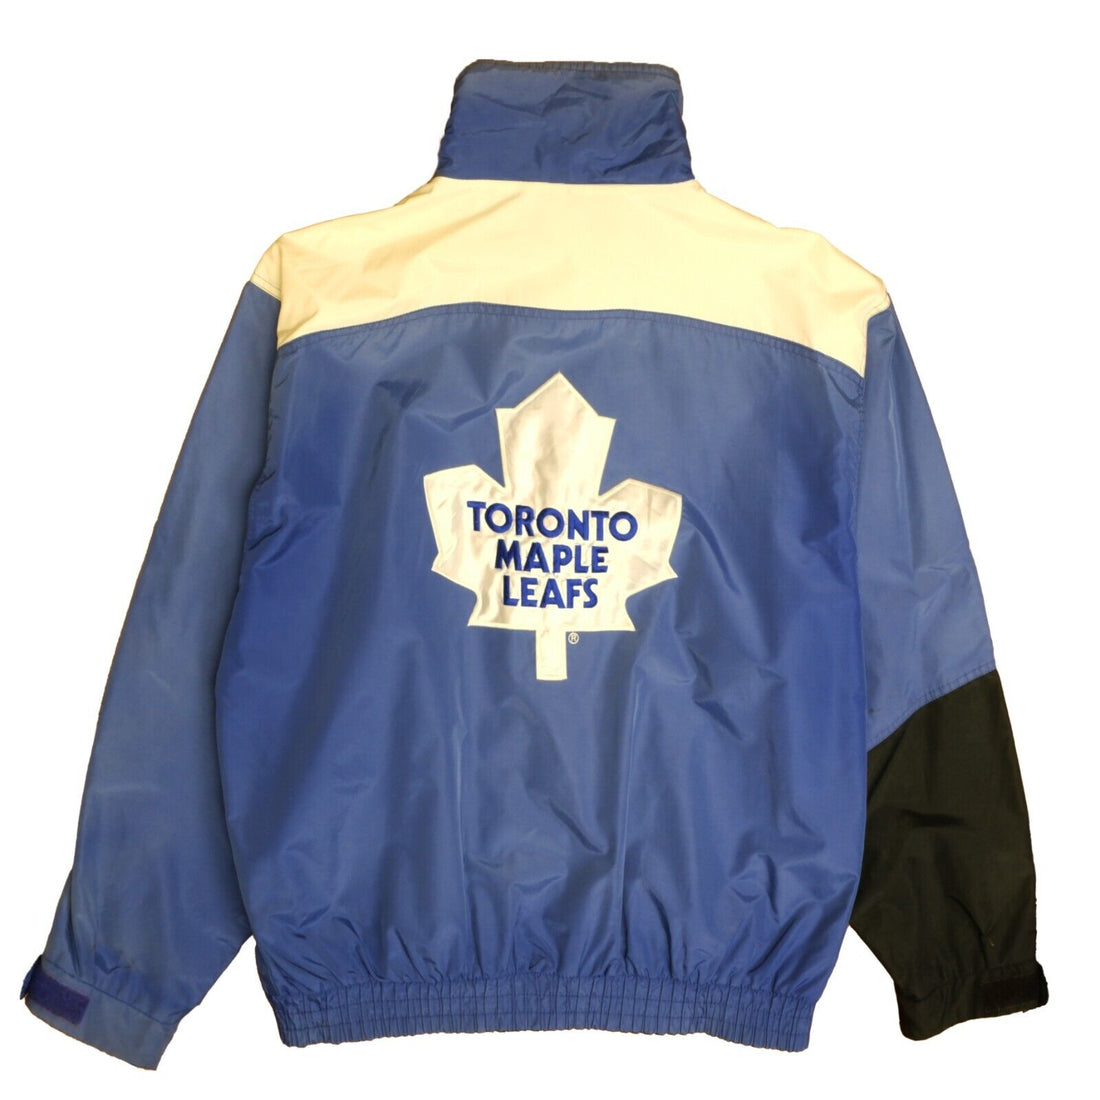 Vintage Toronto Maple Leafs Chalk Line Windbreaker Light Jacket Large 90s NHL